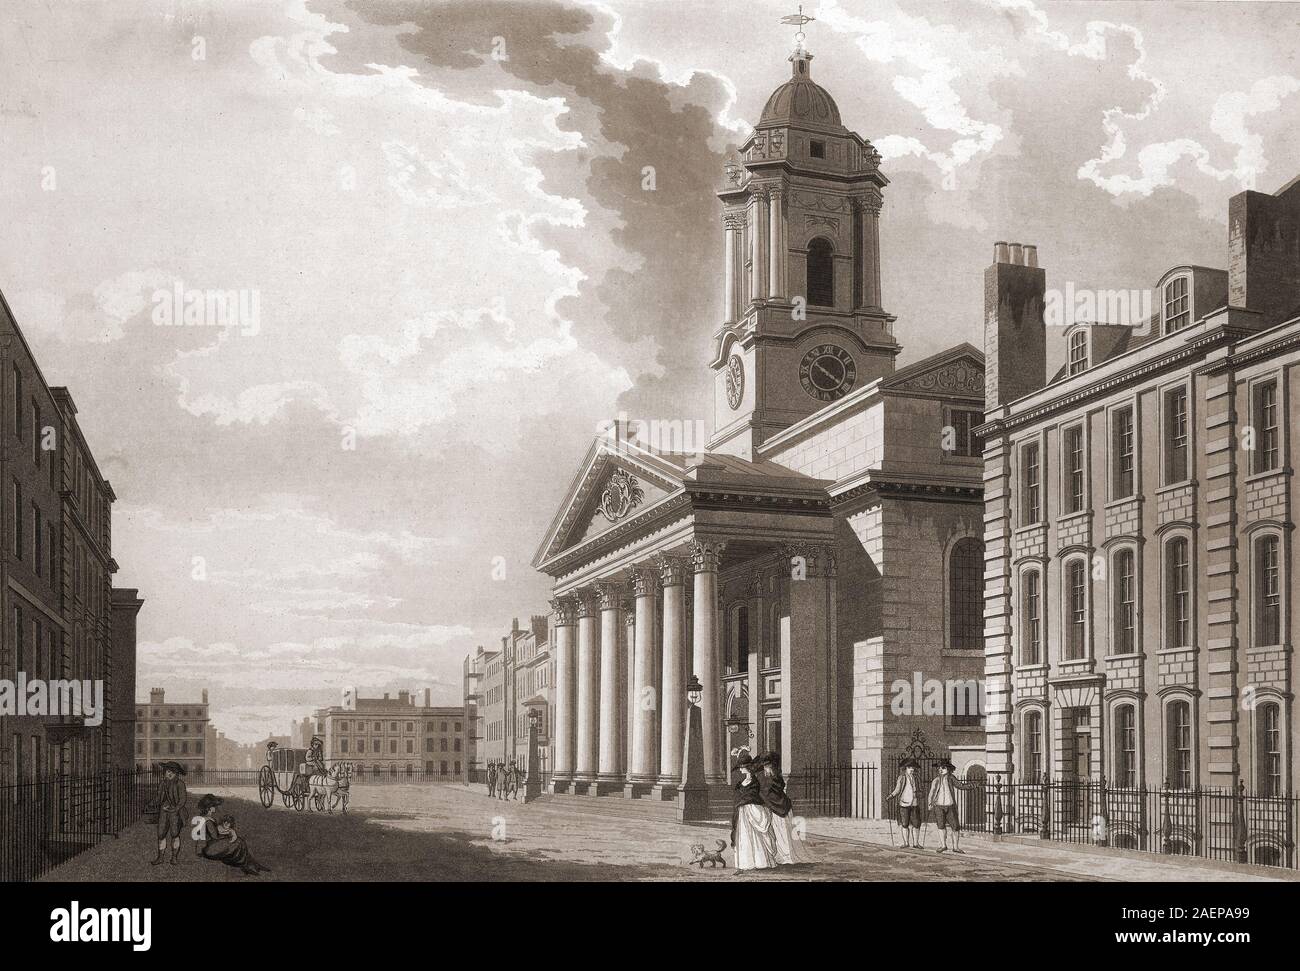 Kirche von St George's Hannover Square, Aquatinta, von T.Malton. 1787, London, England, Großbritannien Stockfoto